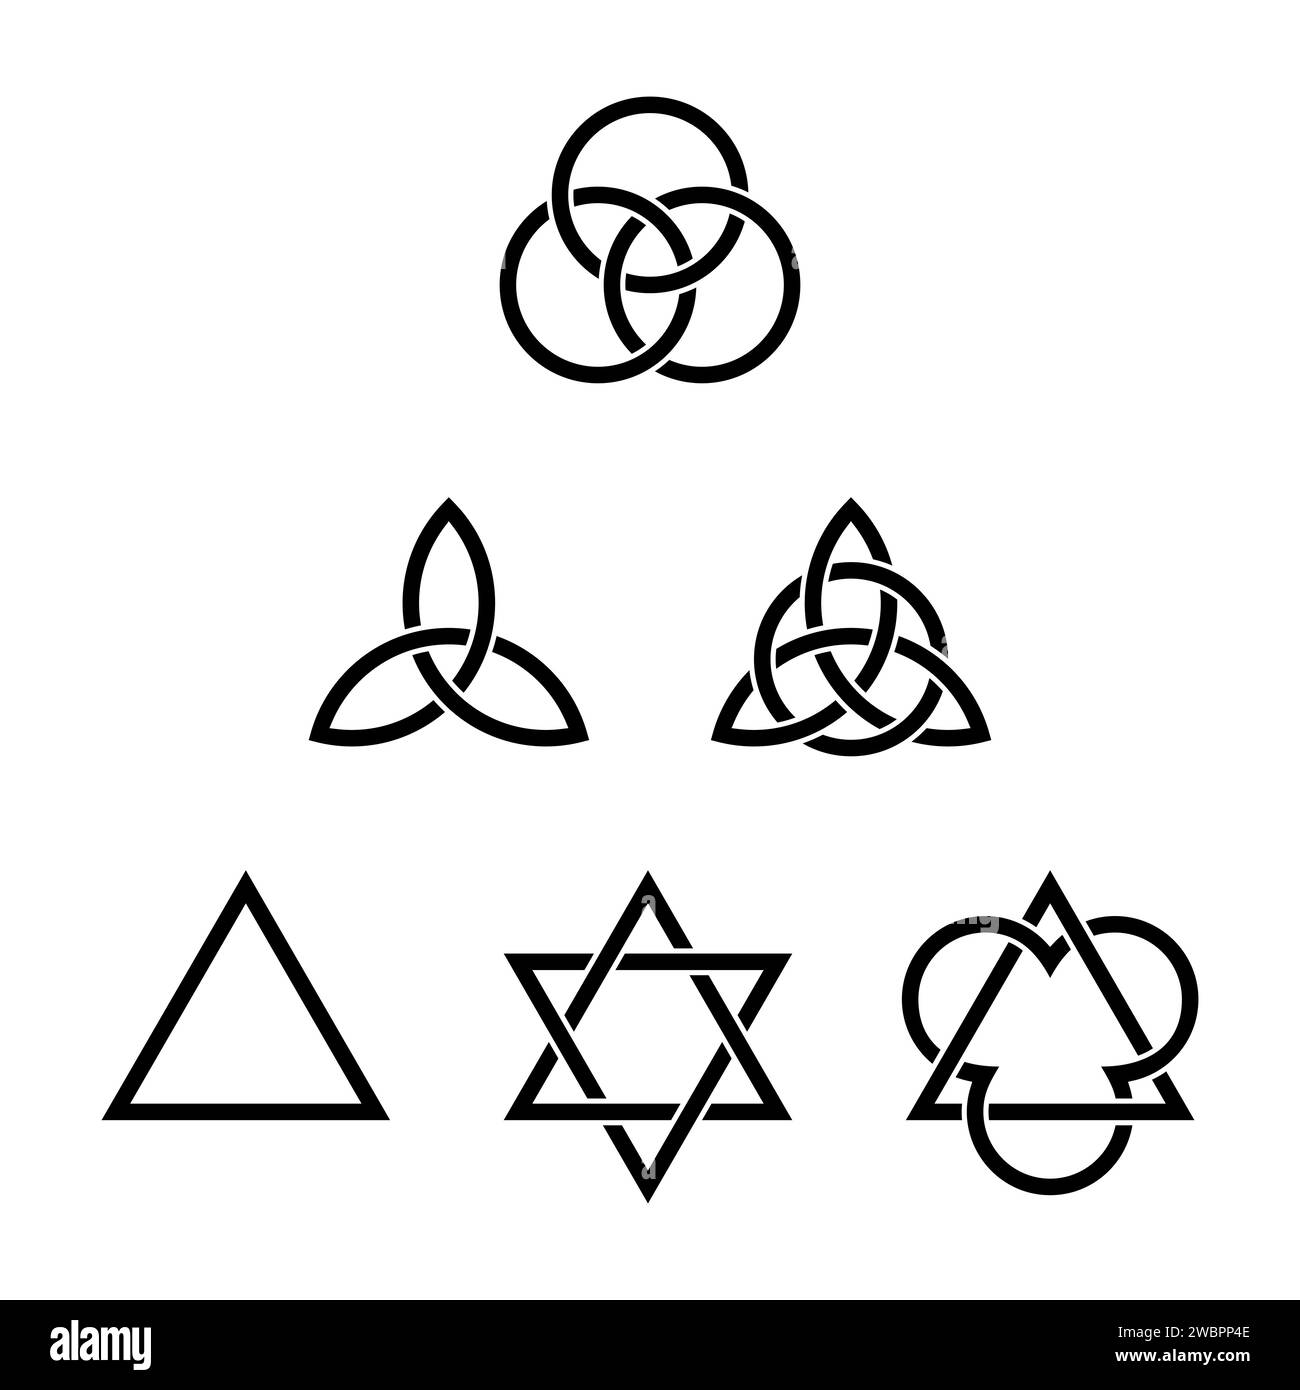 Sei simboli della Trinità. Antichi simboli cristiani, formati da triangoli interlacciati, triquetras celtici e cerchi. Foto Stock